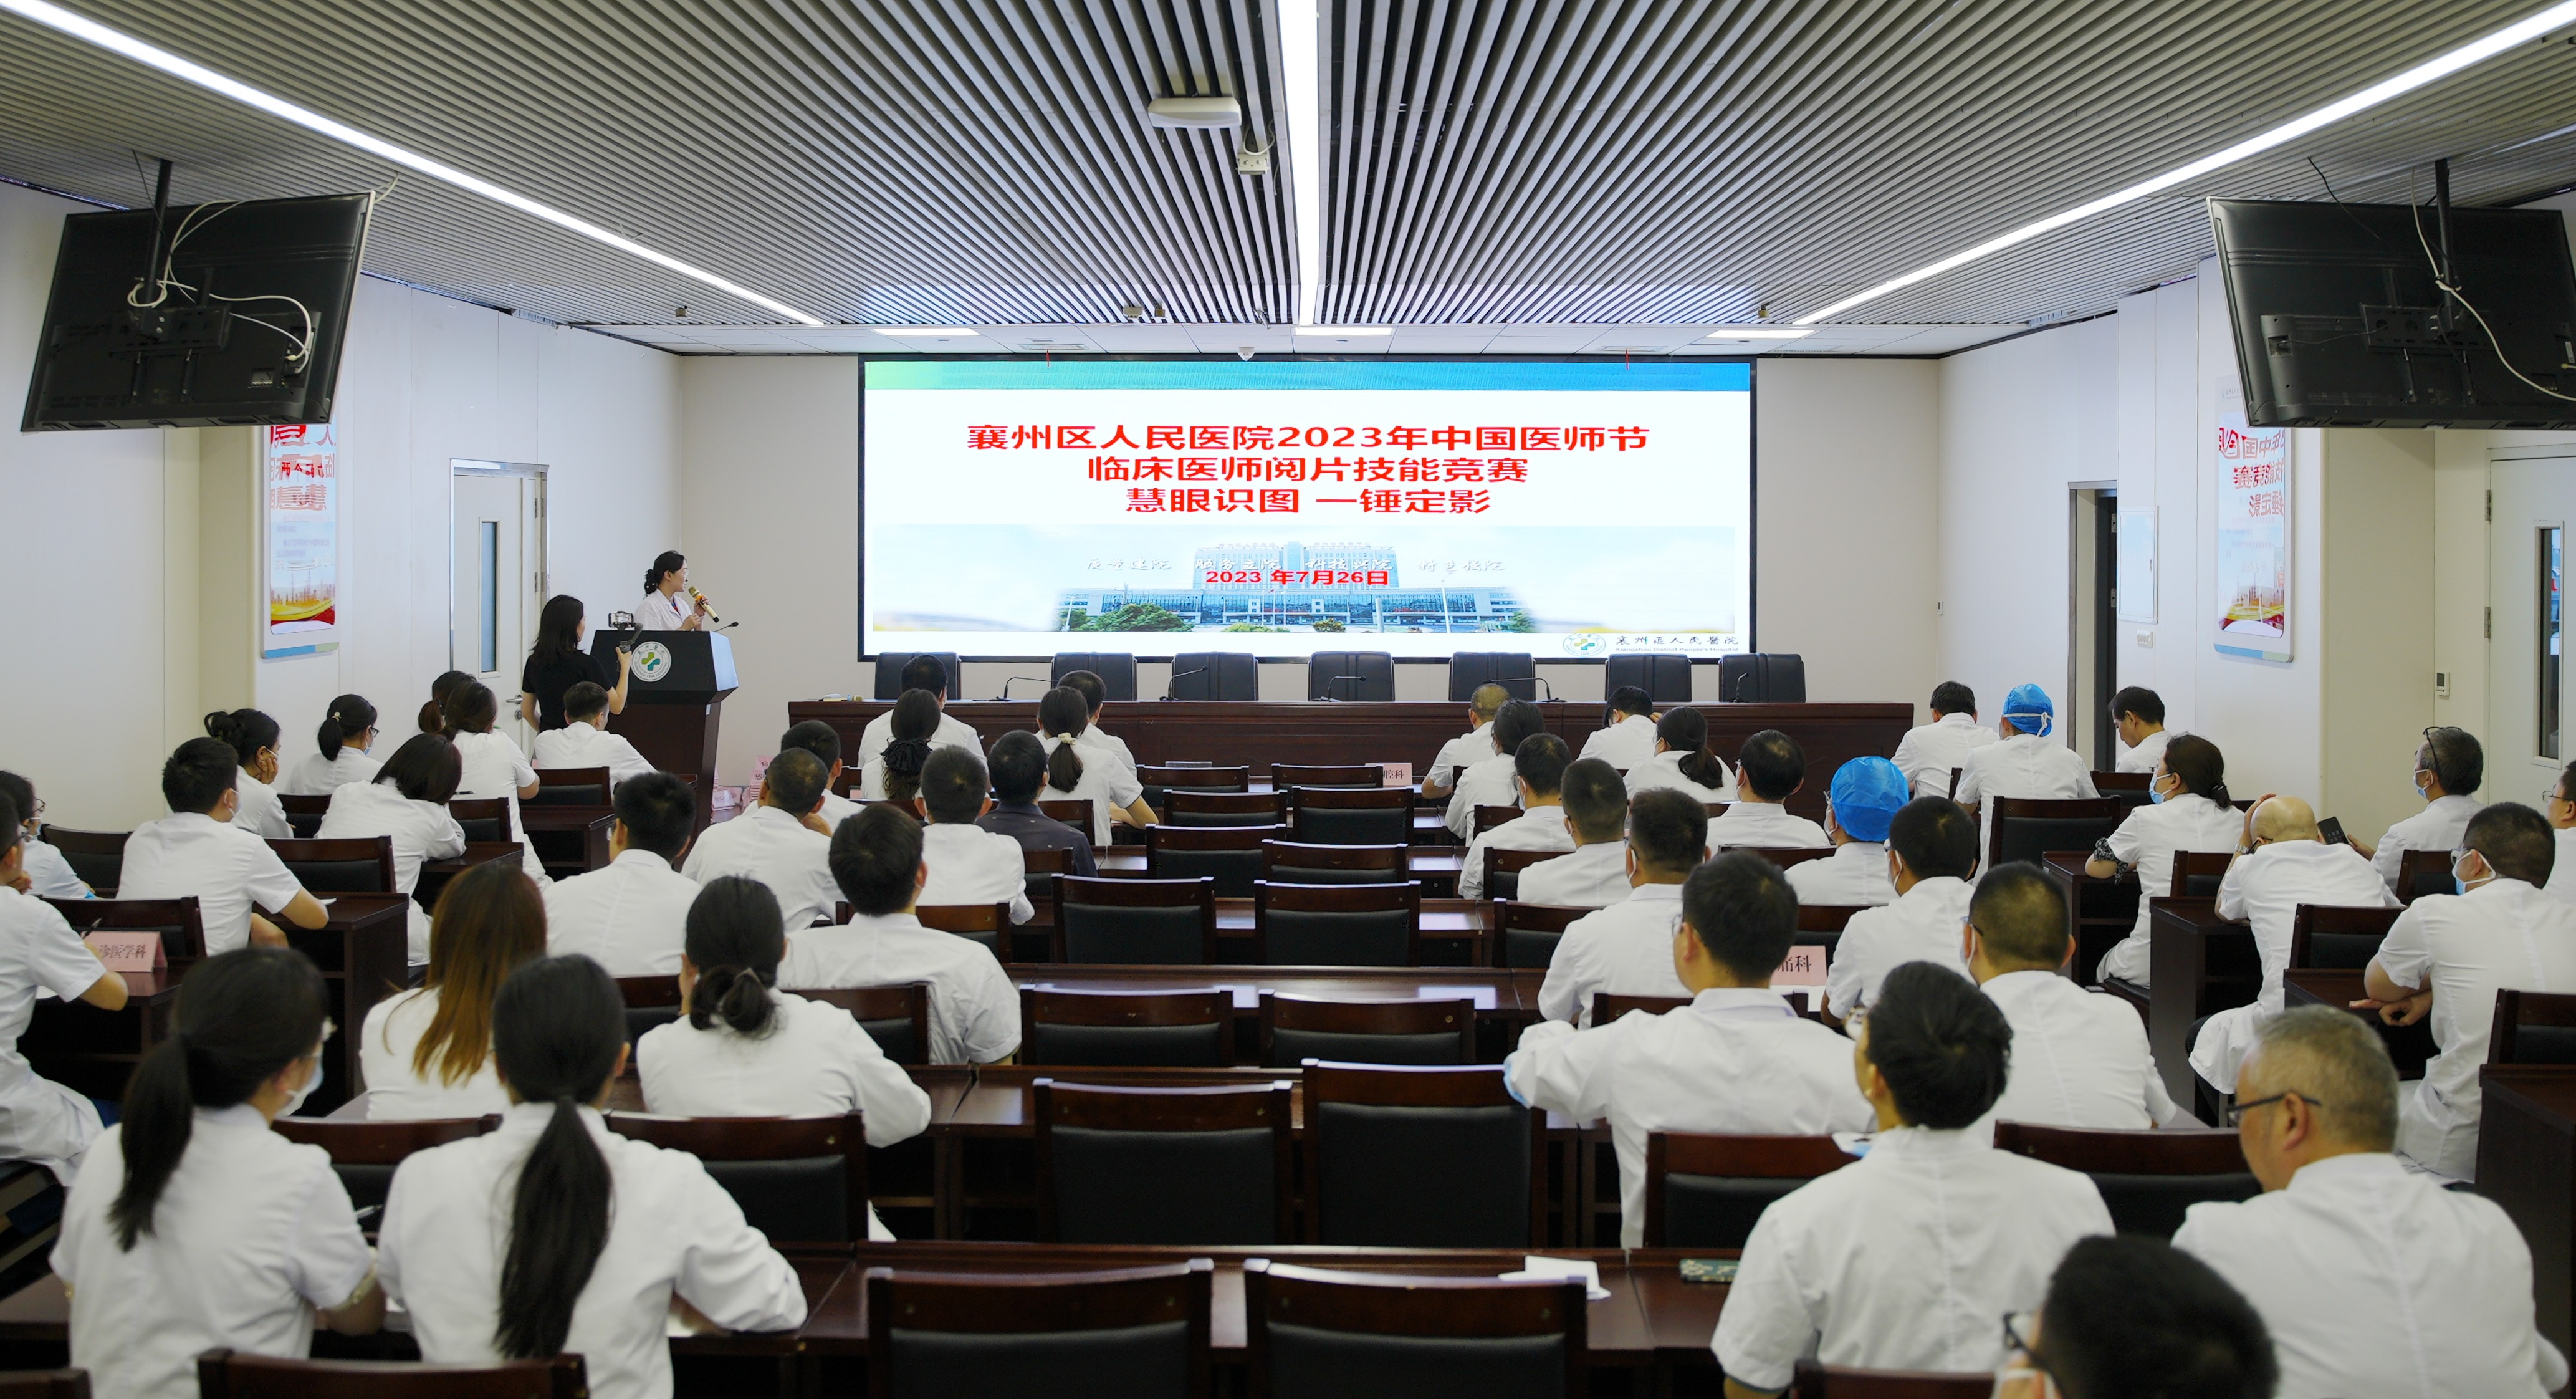 慧眼識圖，一錘定影——襄州區人民醫院舉辦臨床醫師閱片技能競賽